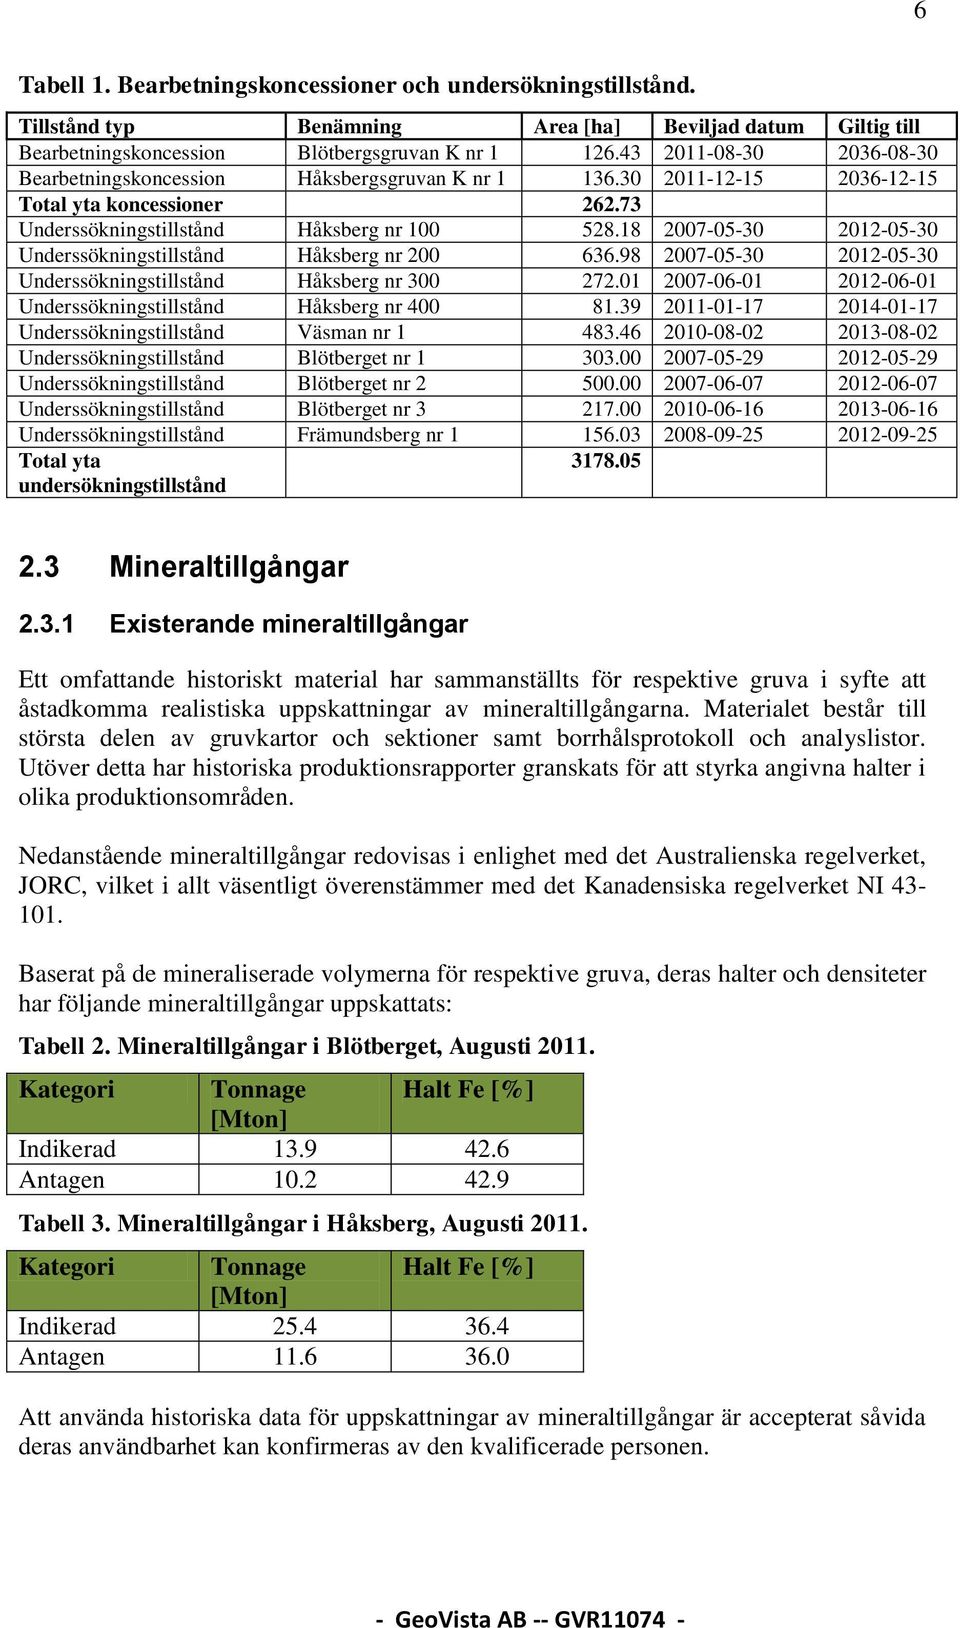 18 2007-05-30 2012-05-30 Underssökningstillstånd Håksberg nr 200 636.98 2007-05-30 2012-05-30 Underssökningstillstånd Håksberg nr 300 272.